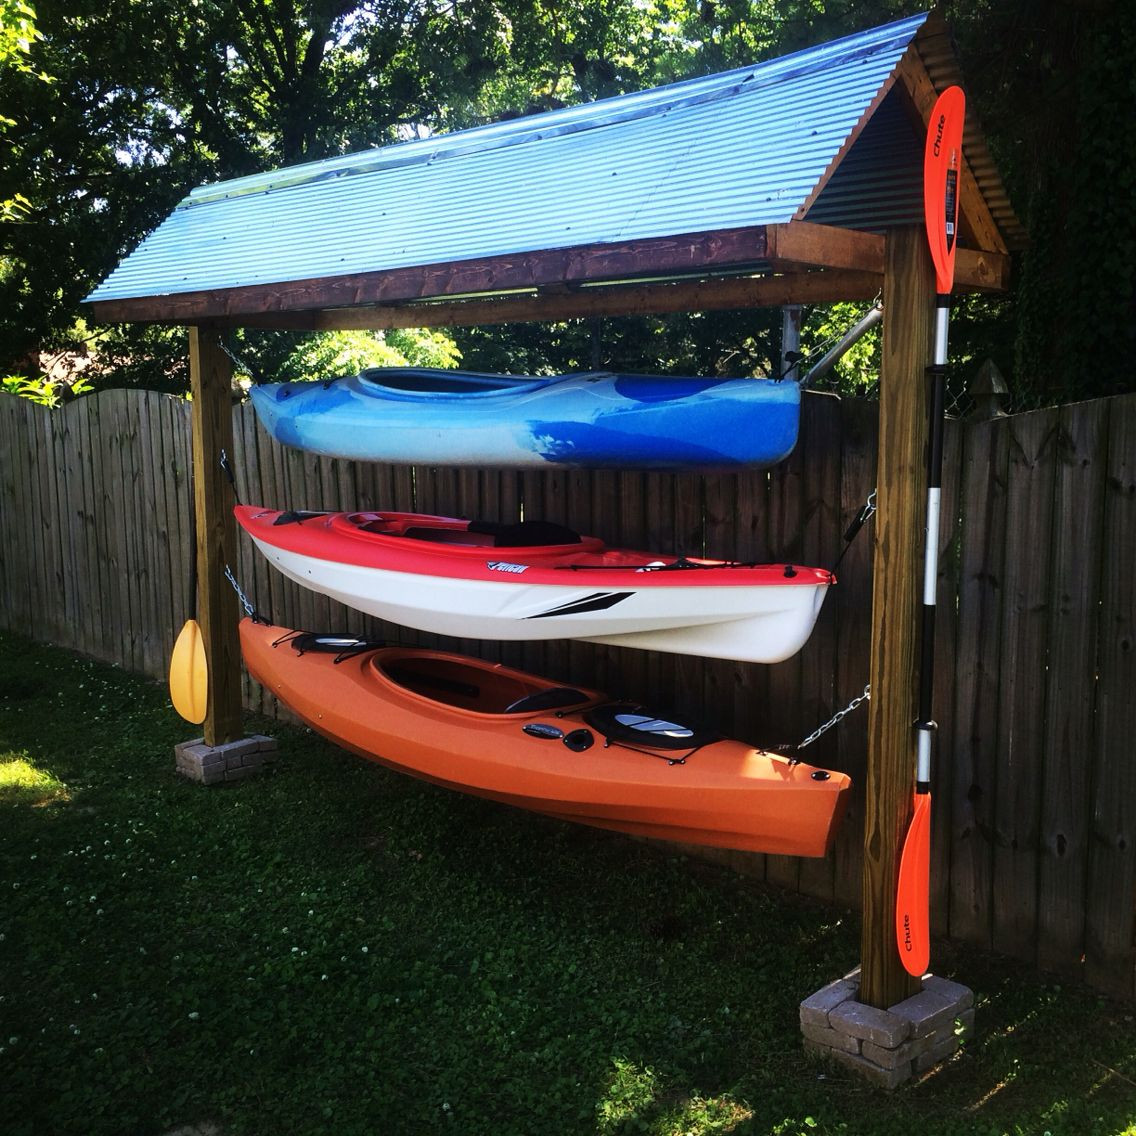 Best ideas about Kayak Rack DIY
. Save or Pin Kayak rack diy … Now.